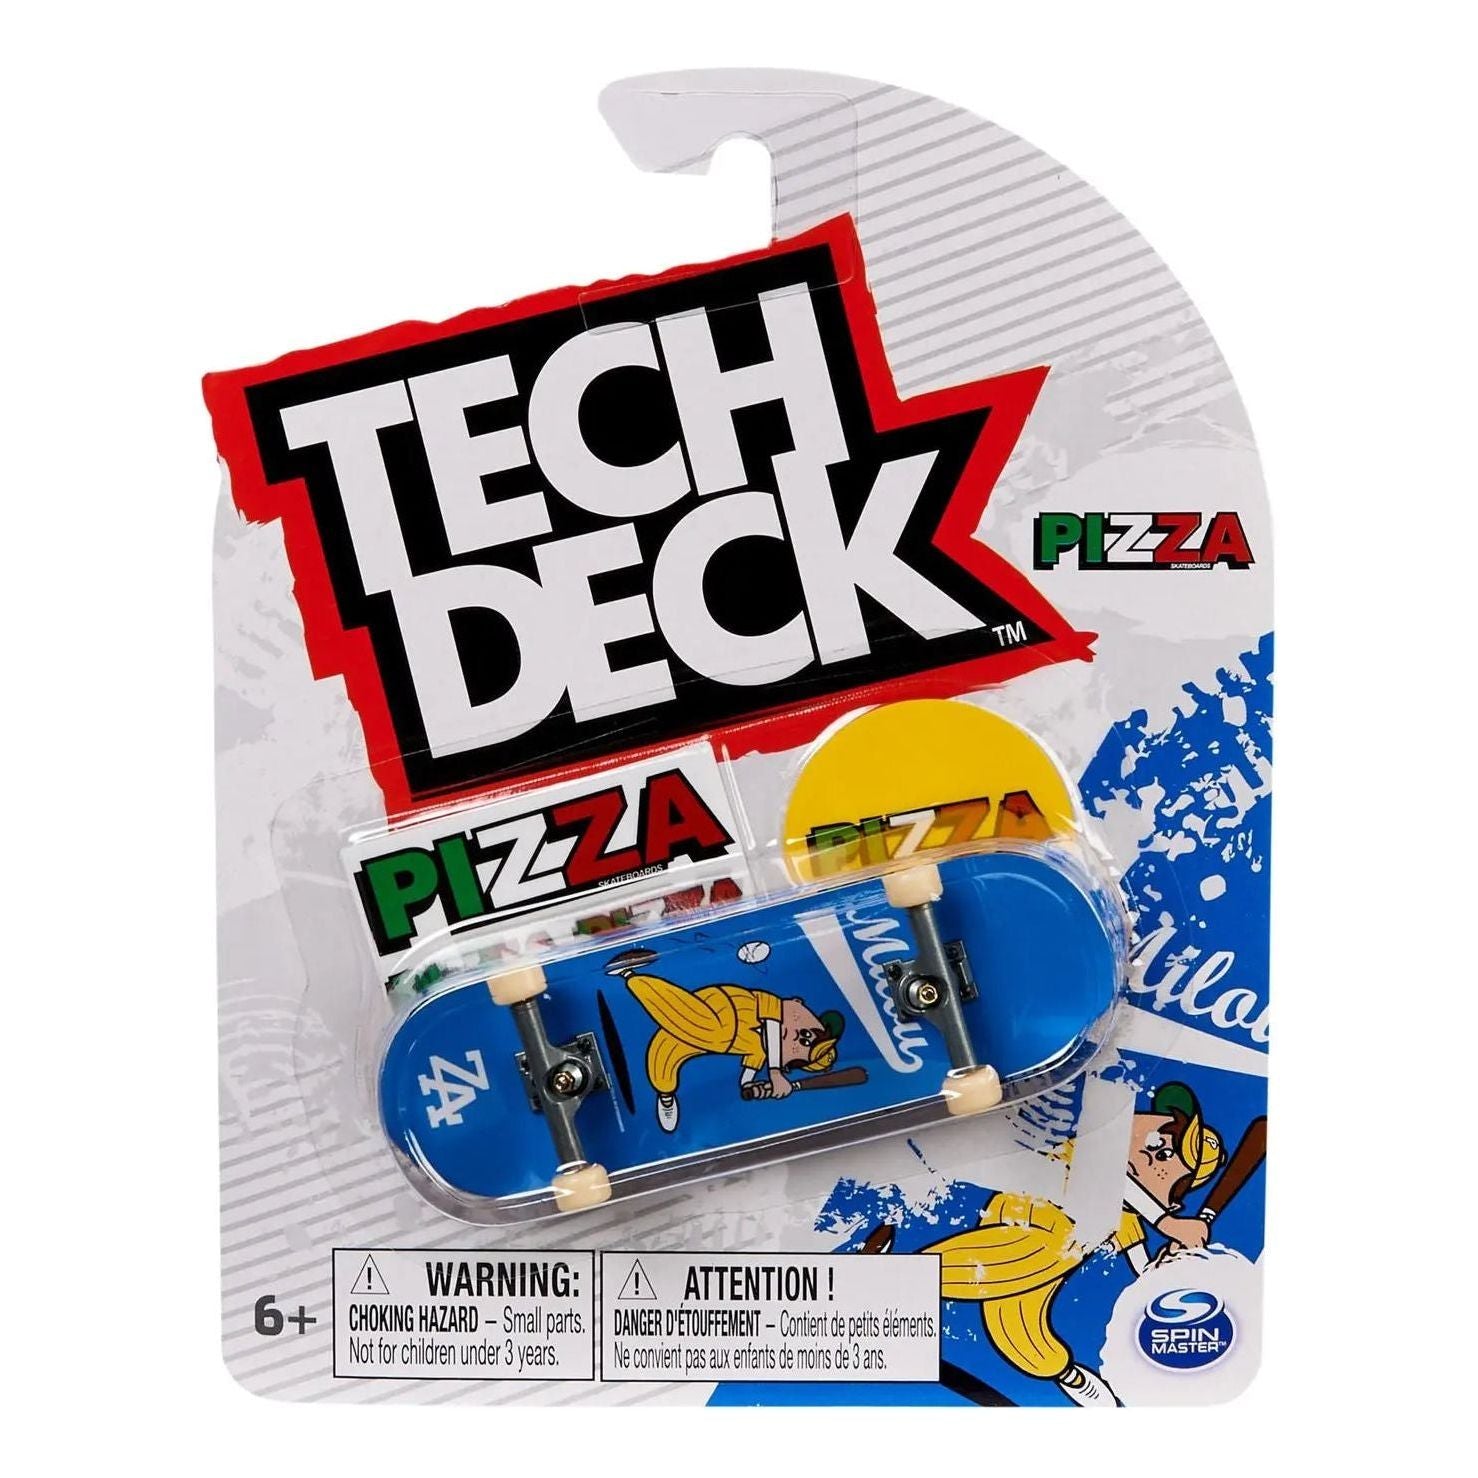 Tech Deck 96mm Assorted Fingerboard